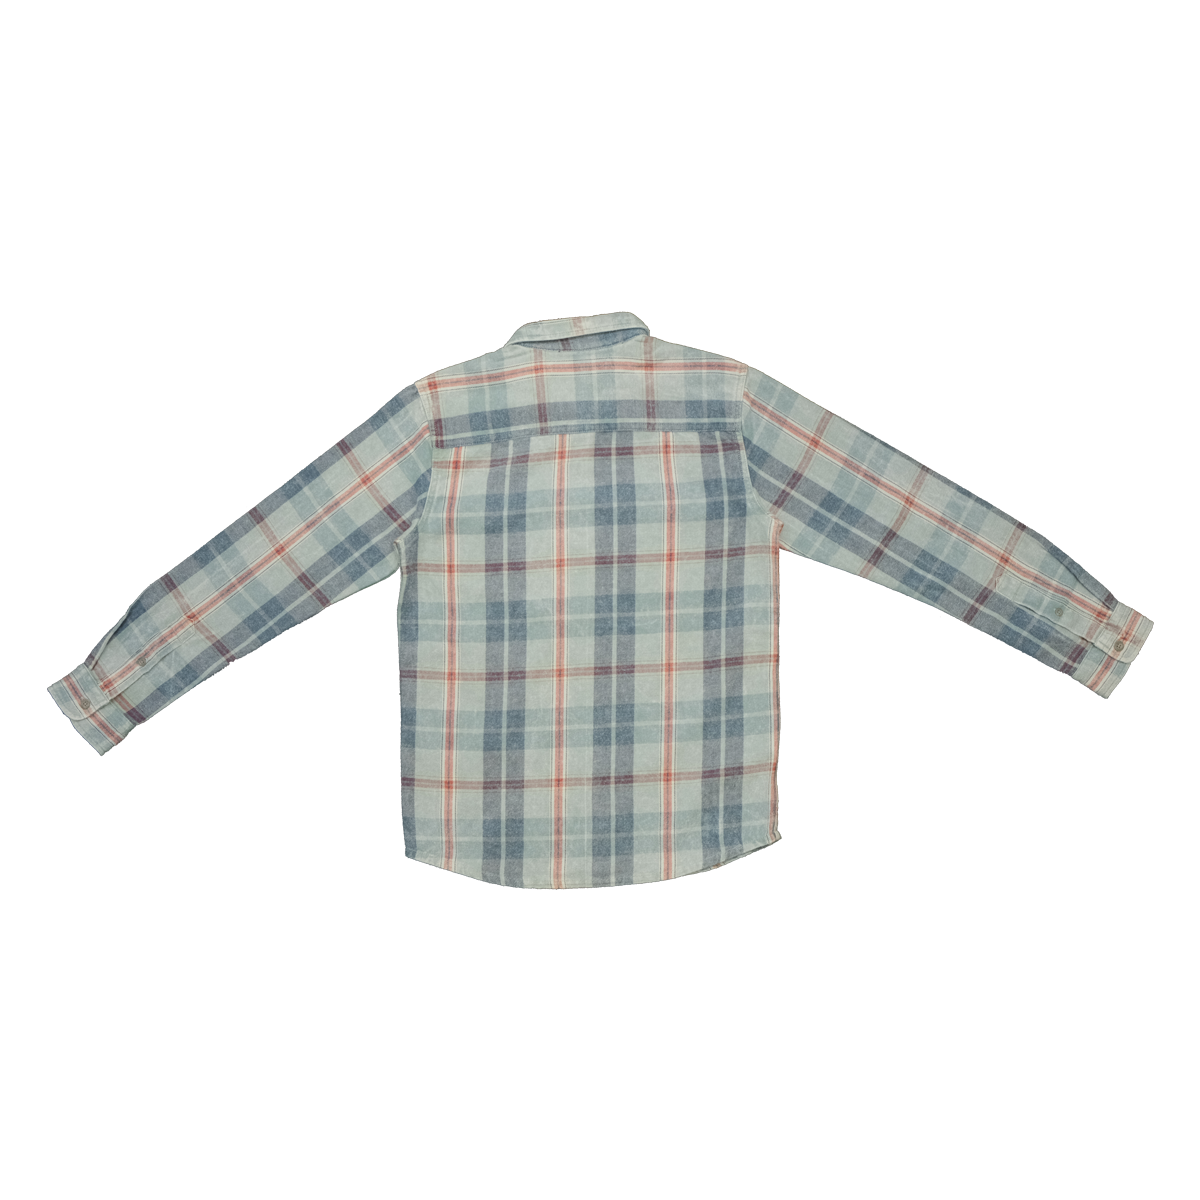 Quiksilver Boy's Pastel Blue Red L/S Flannel Shirt (S03)